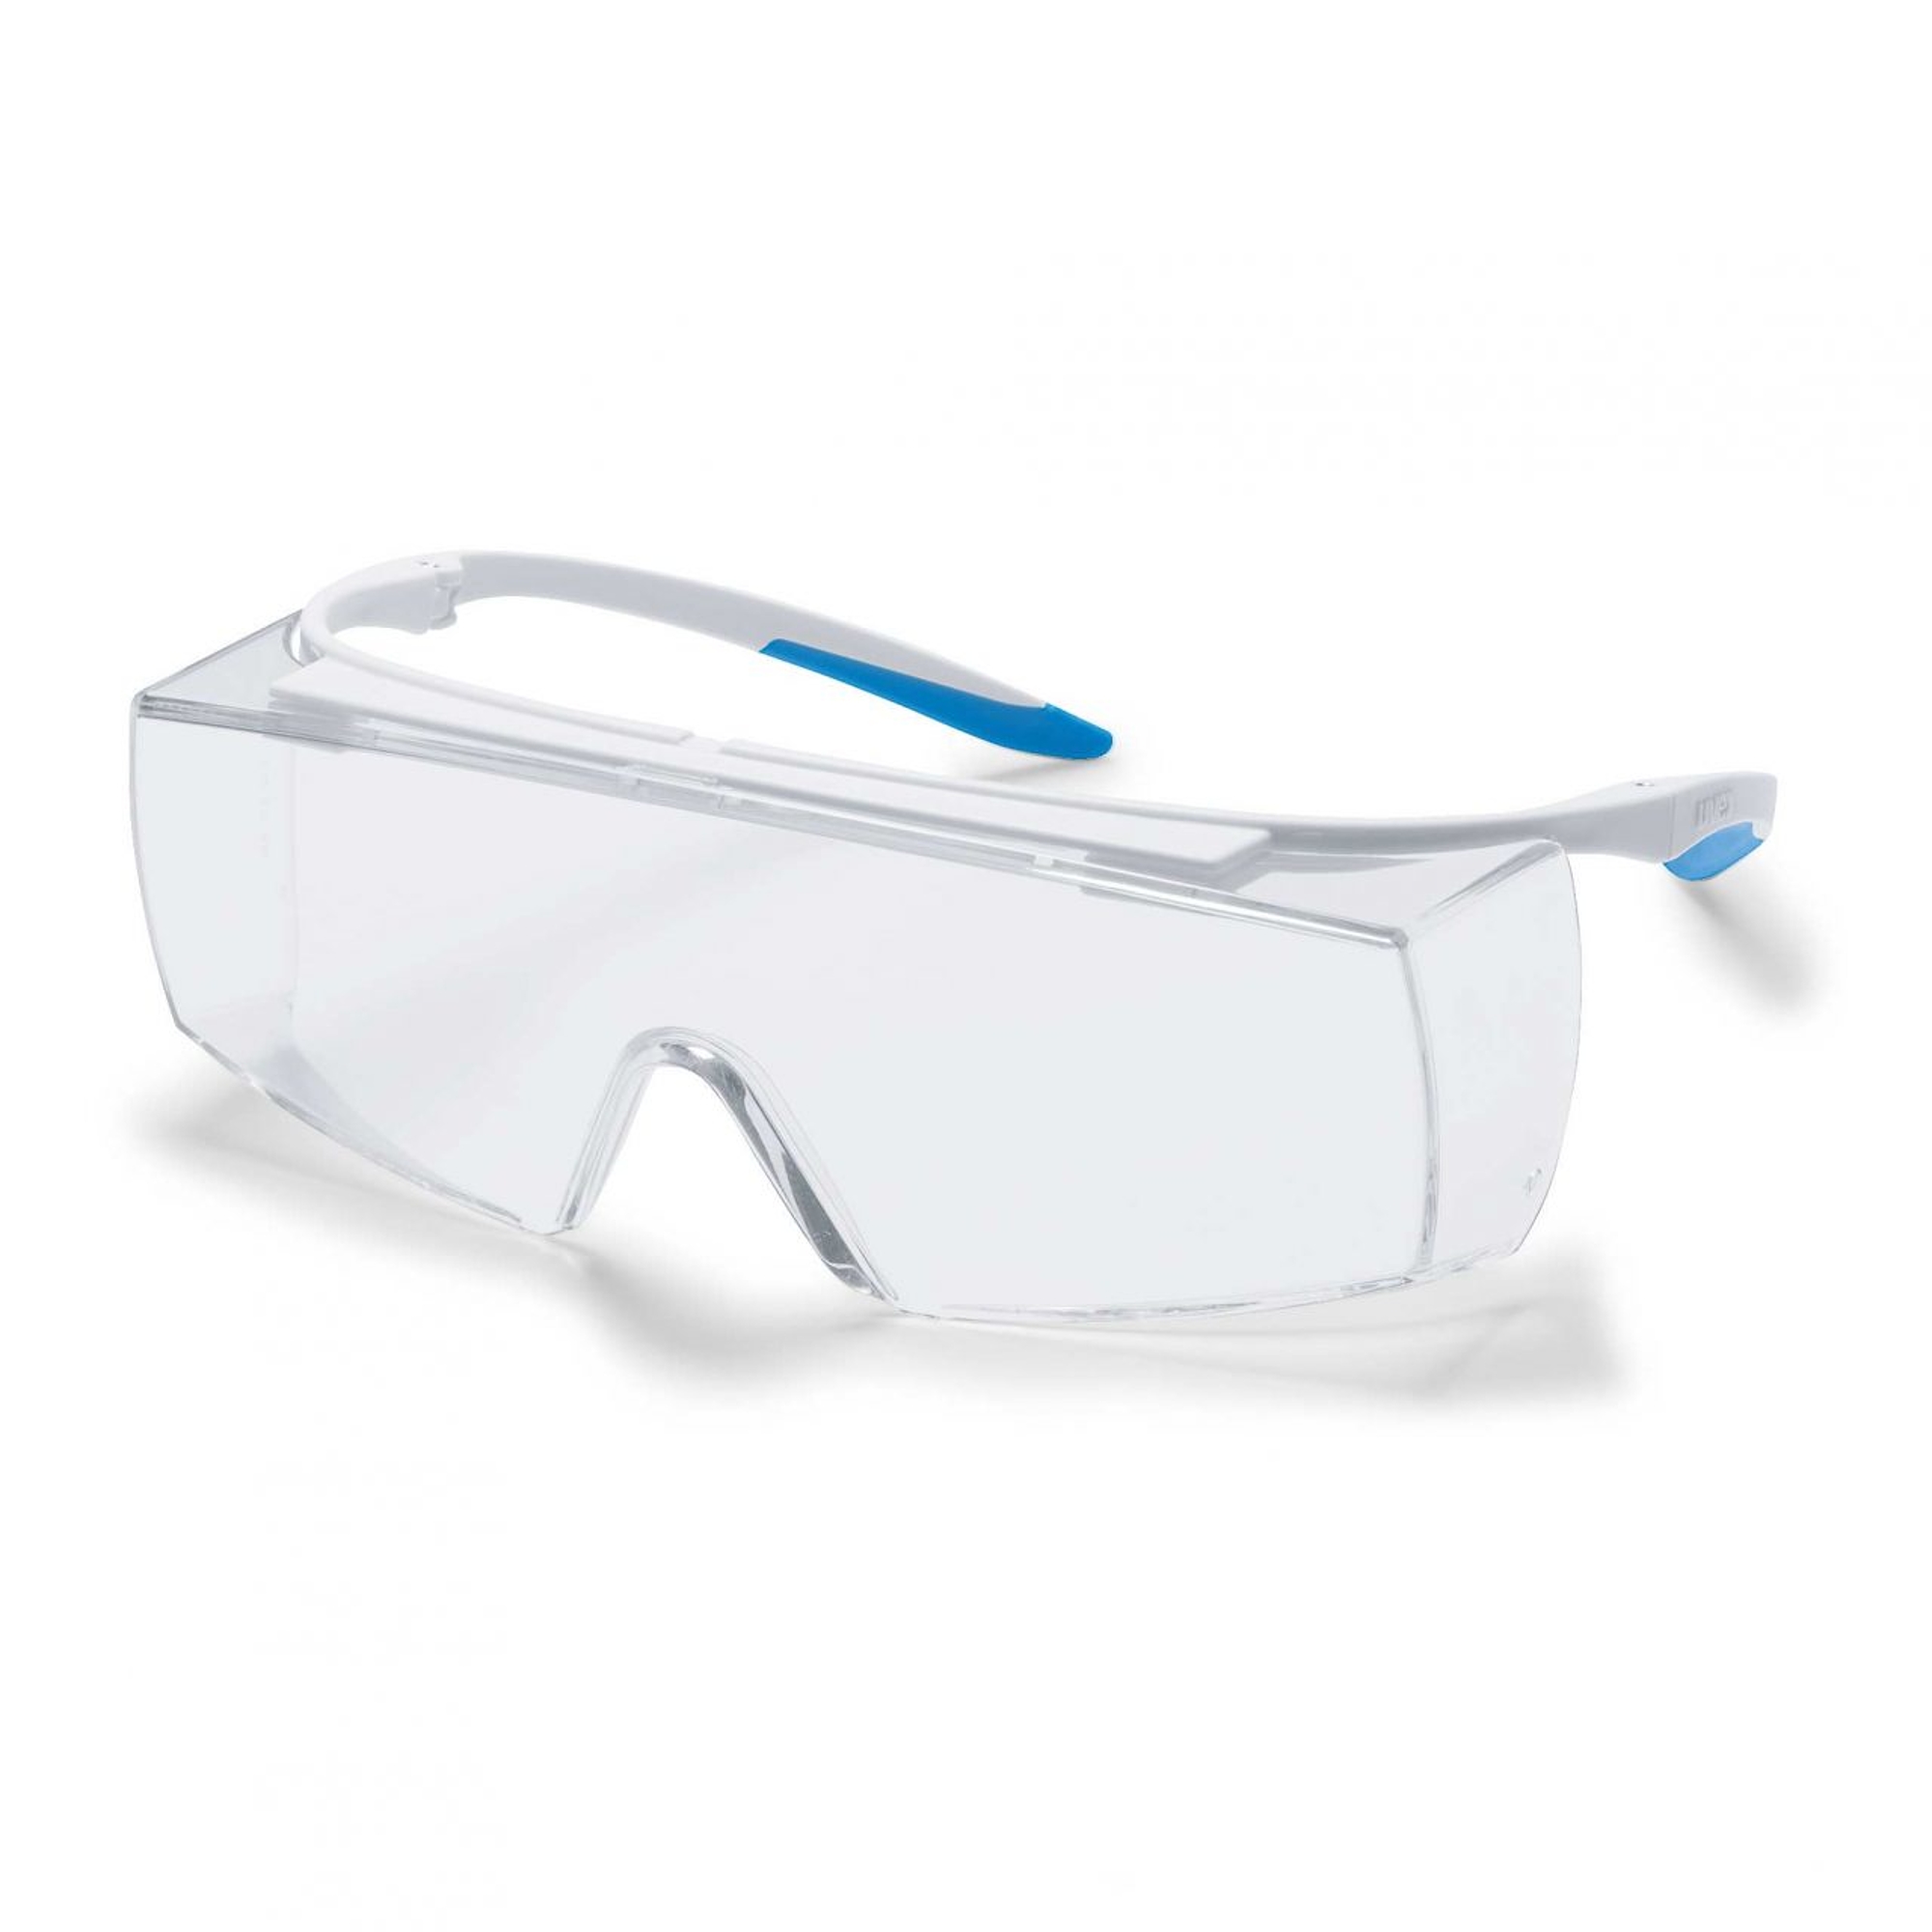 uvex super F OTG 9169 - dioptriás szemüveg felett viselhető szemüveg (páramentes)